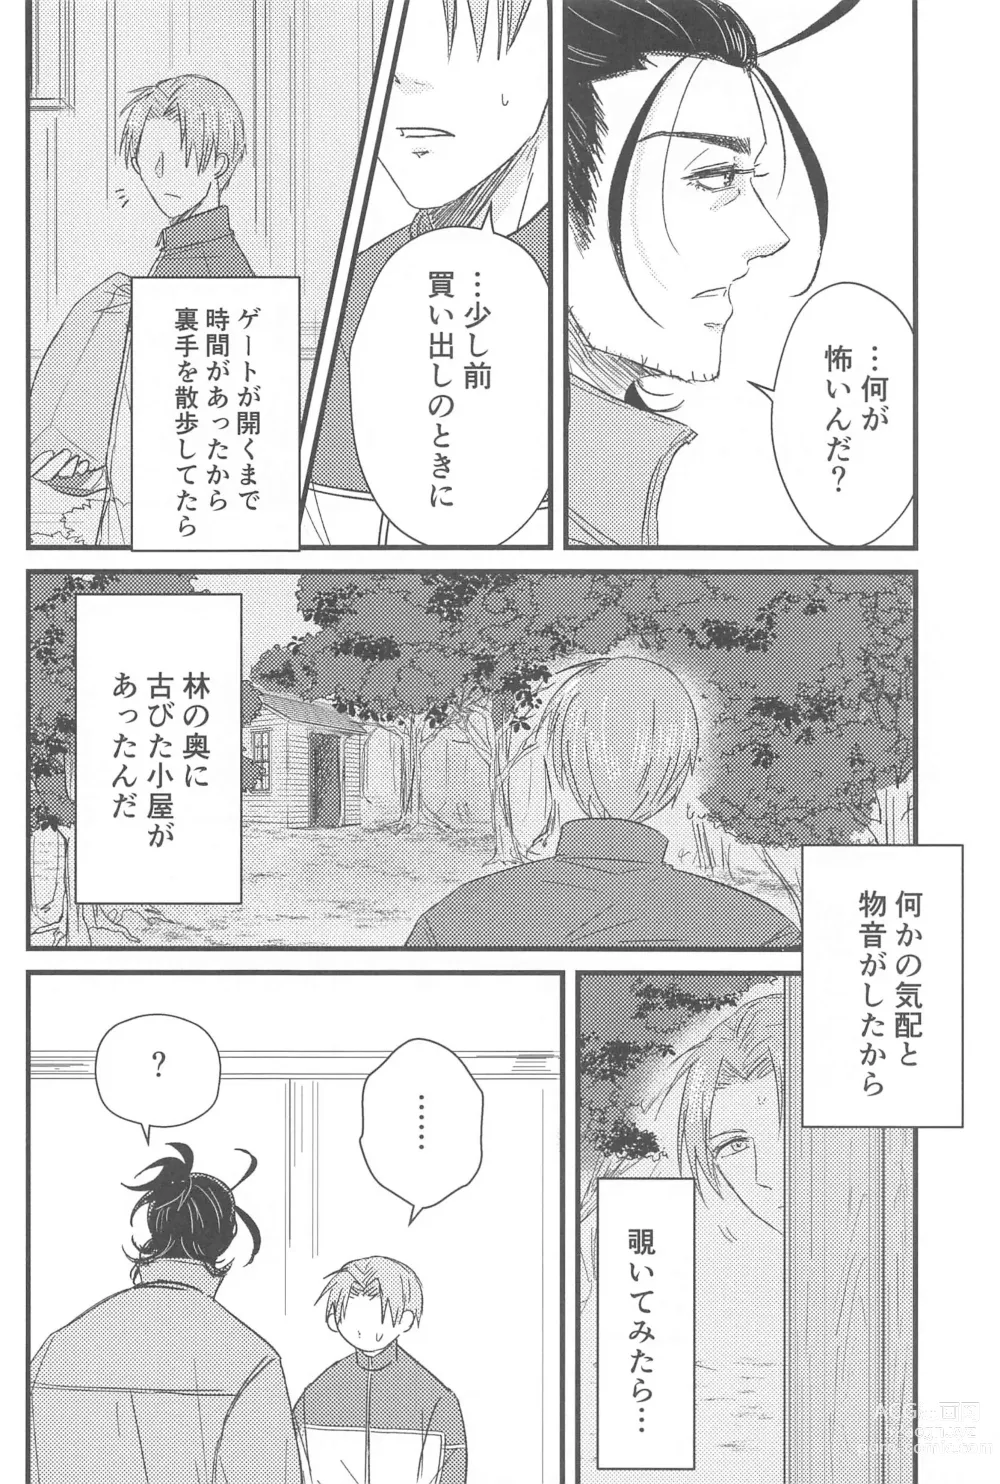 Page 11 of doujinshi Hatsuyo ni Tsugu